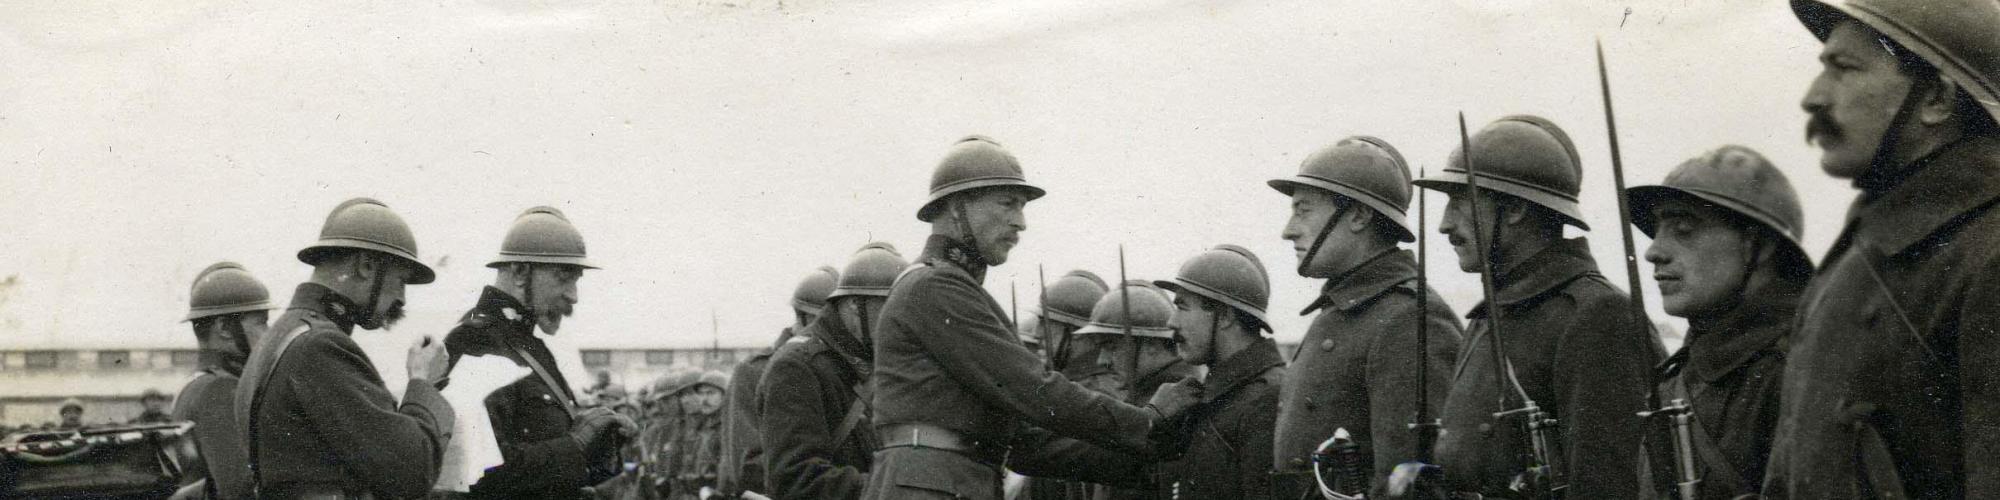 soldats belge Première Guerre Mondiale